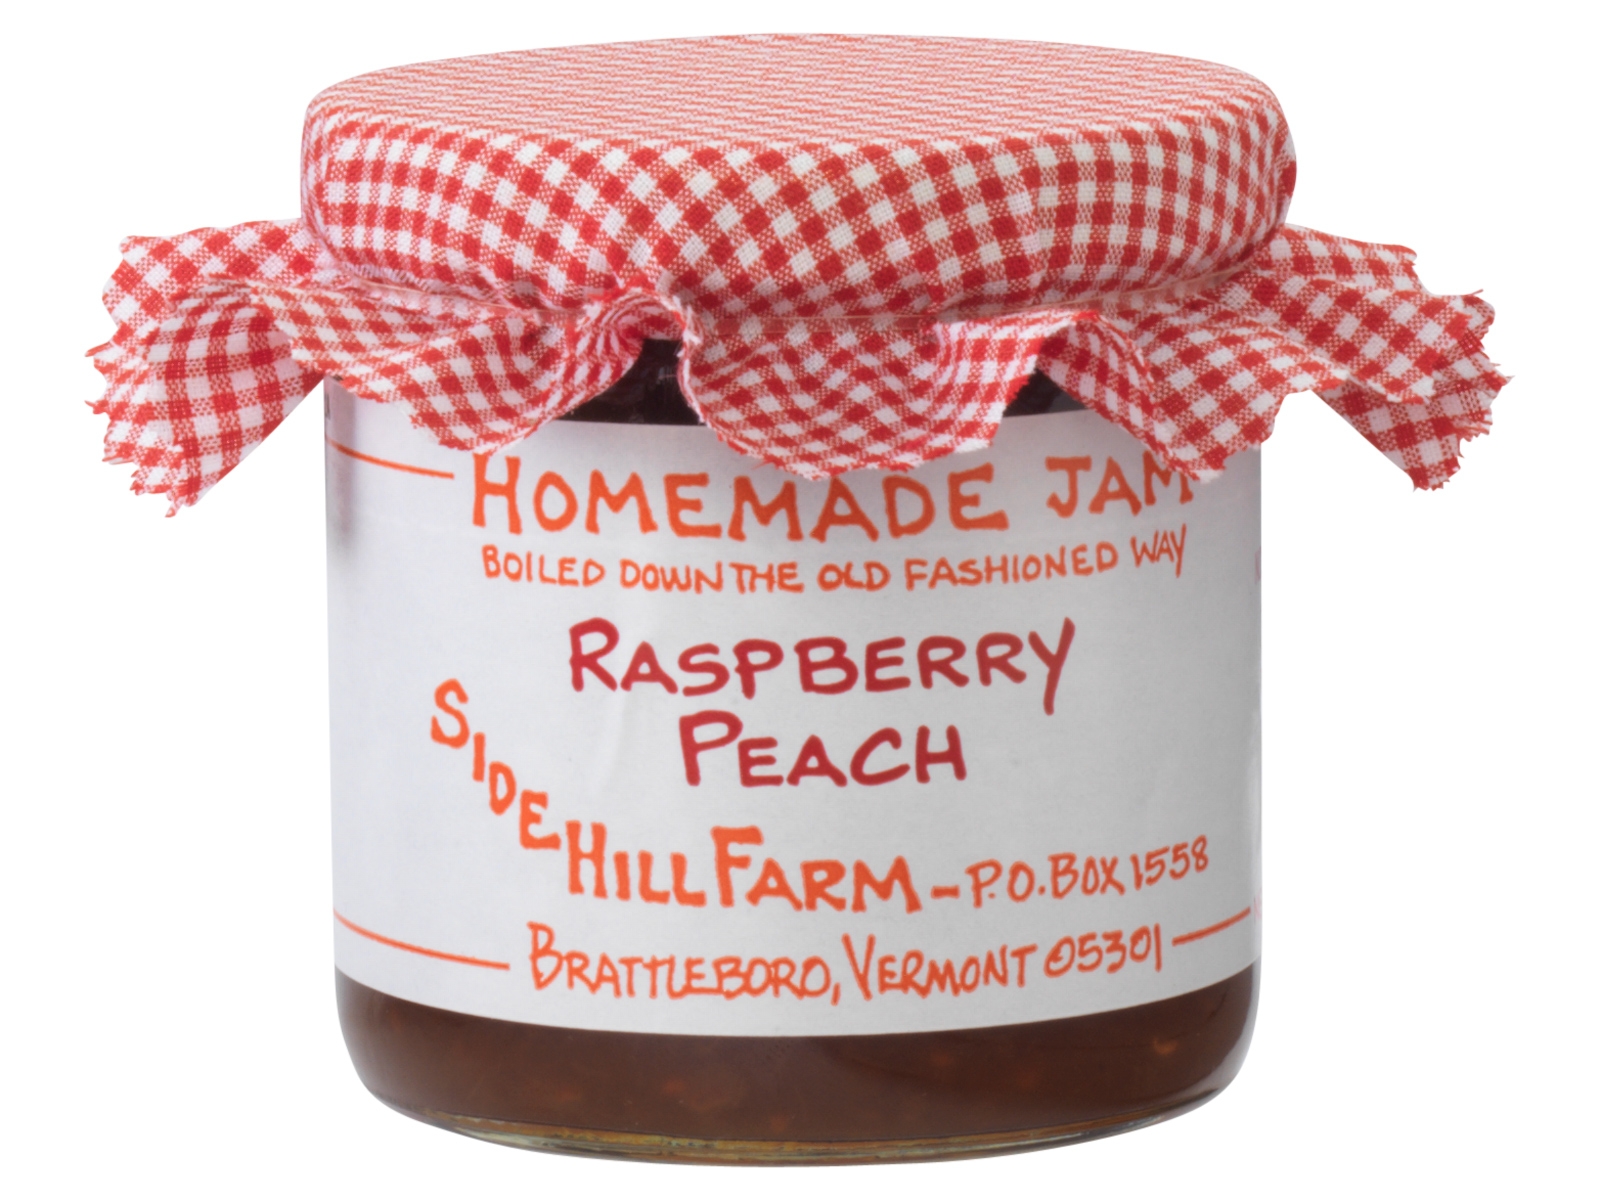 Sidehill Farm Raspberry Peach Jam